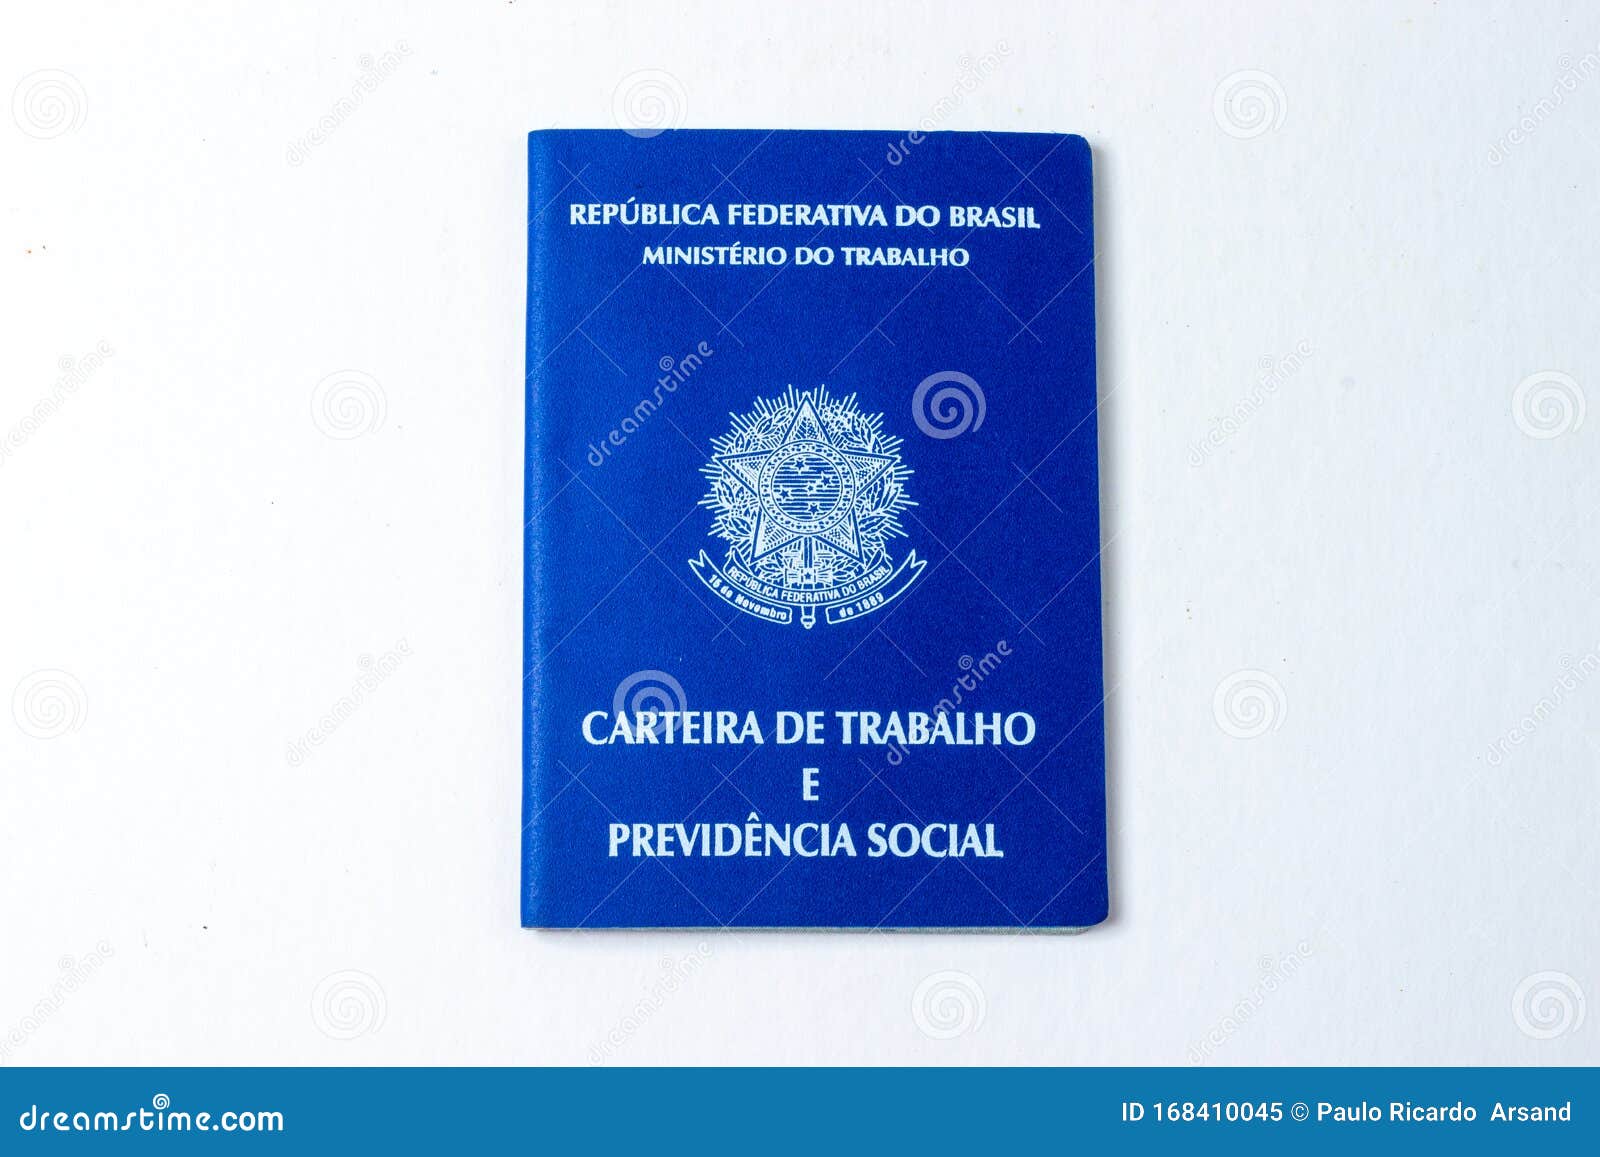 brazilian security work permite, carteira de trabalho brasileira, inss. fundo branco, centralizada